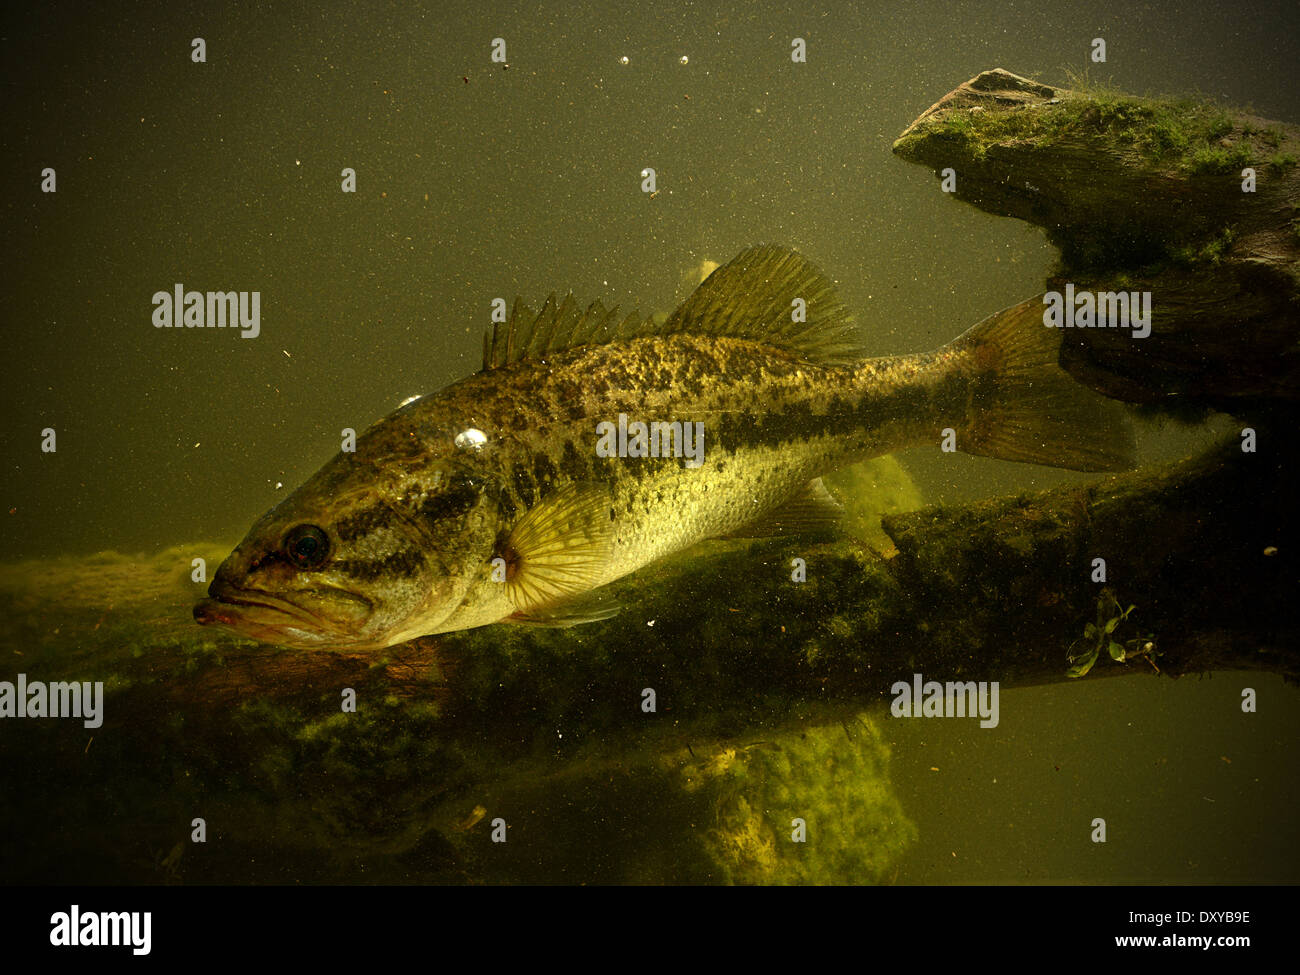 Largemouth Bass Fish Underwater In Lake Stock Photo Alamy